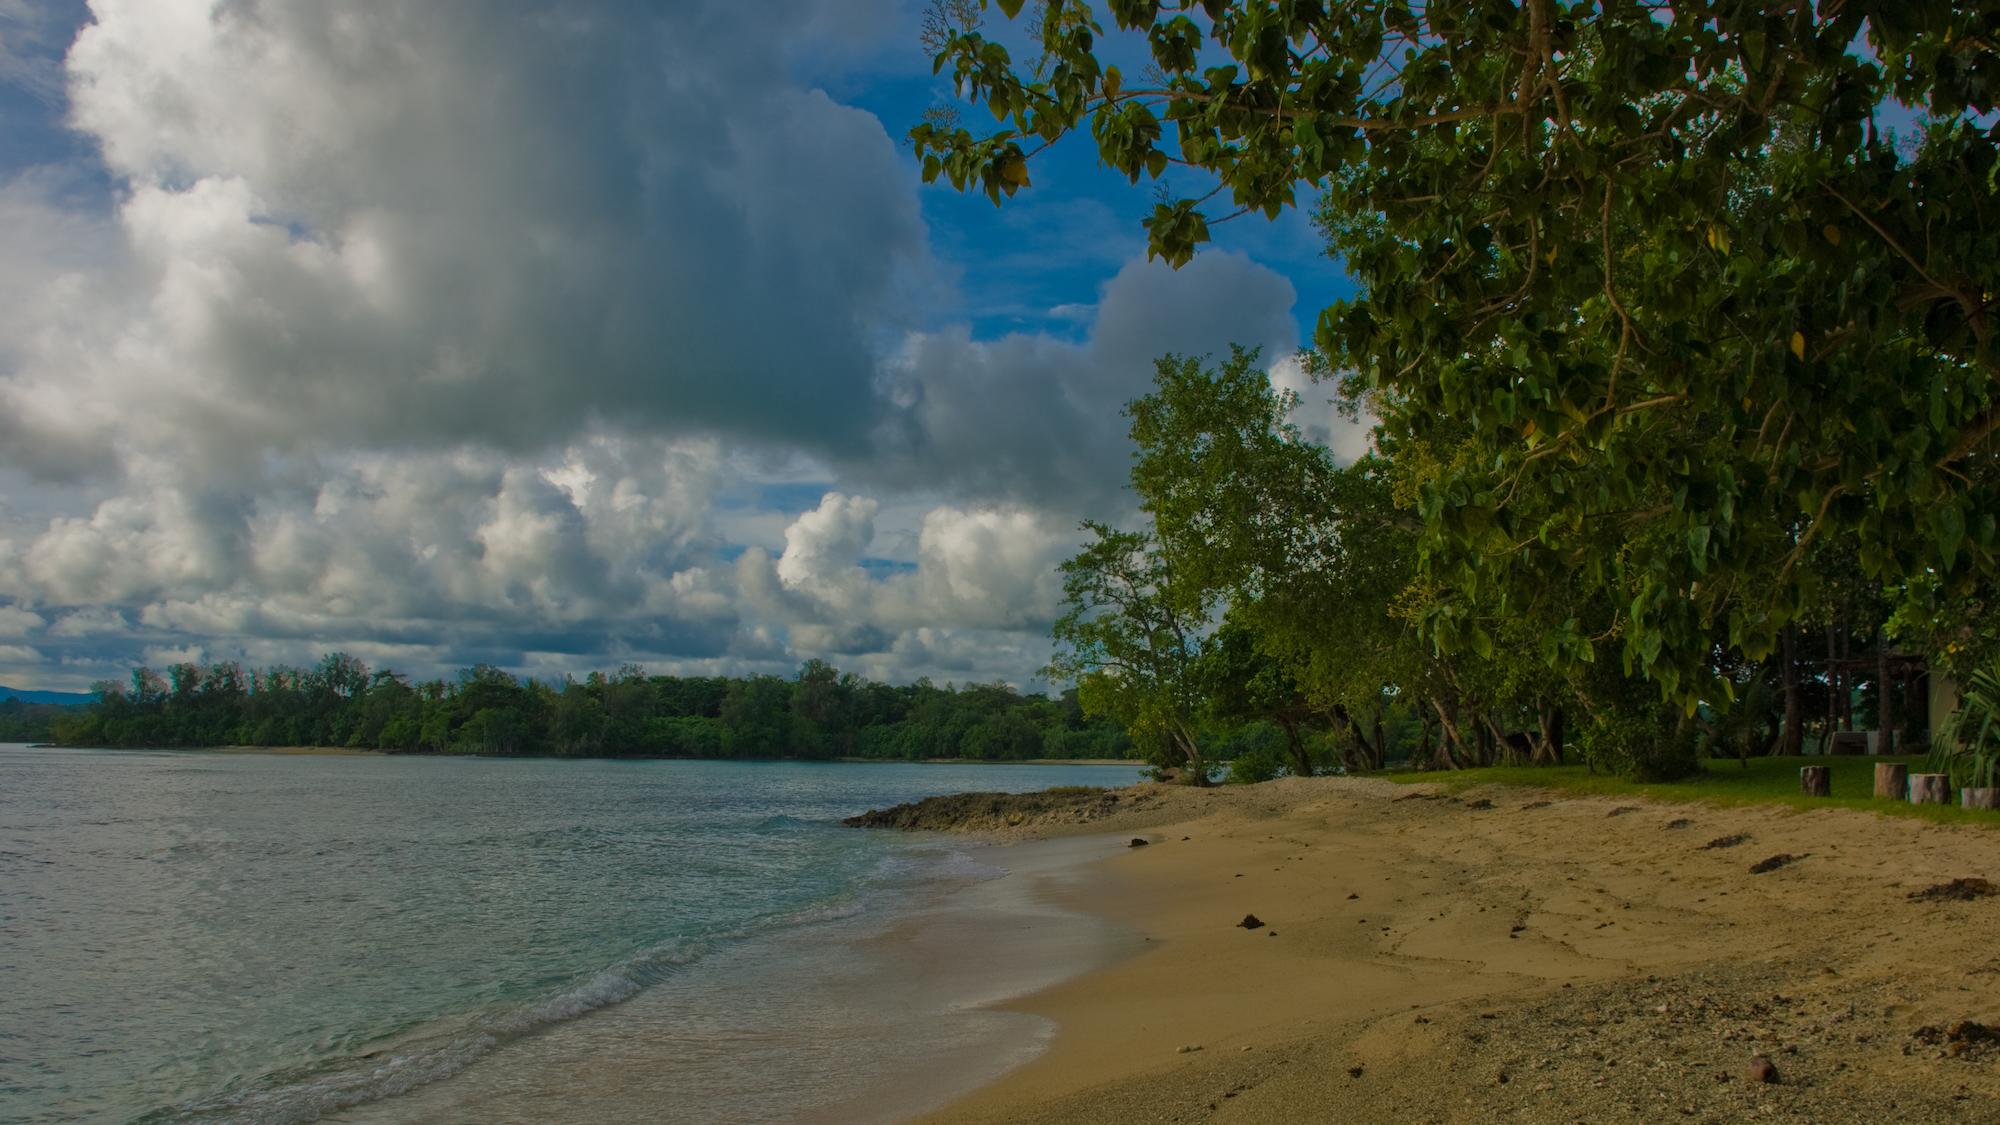 Malerisch wirken die Inseln im Pazifik nur auf den ersten Blick. Der Klimawandel trifft sie hart. (c) Phillip Capper via wikimedia commons